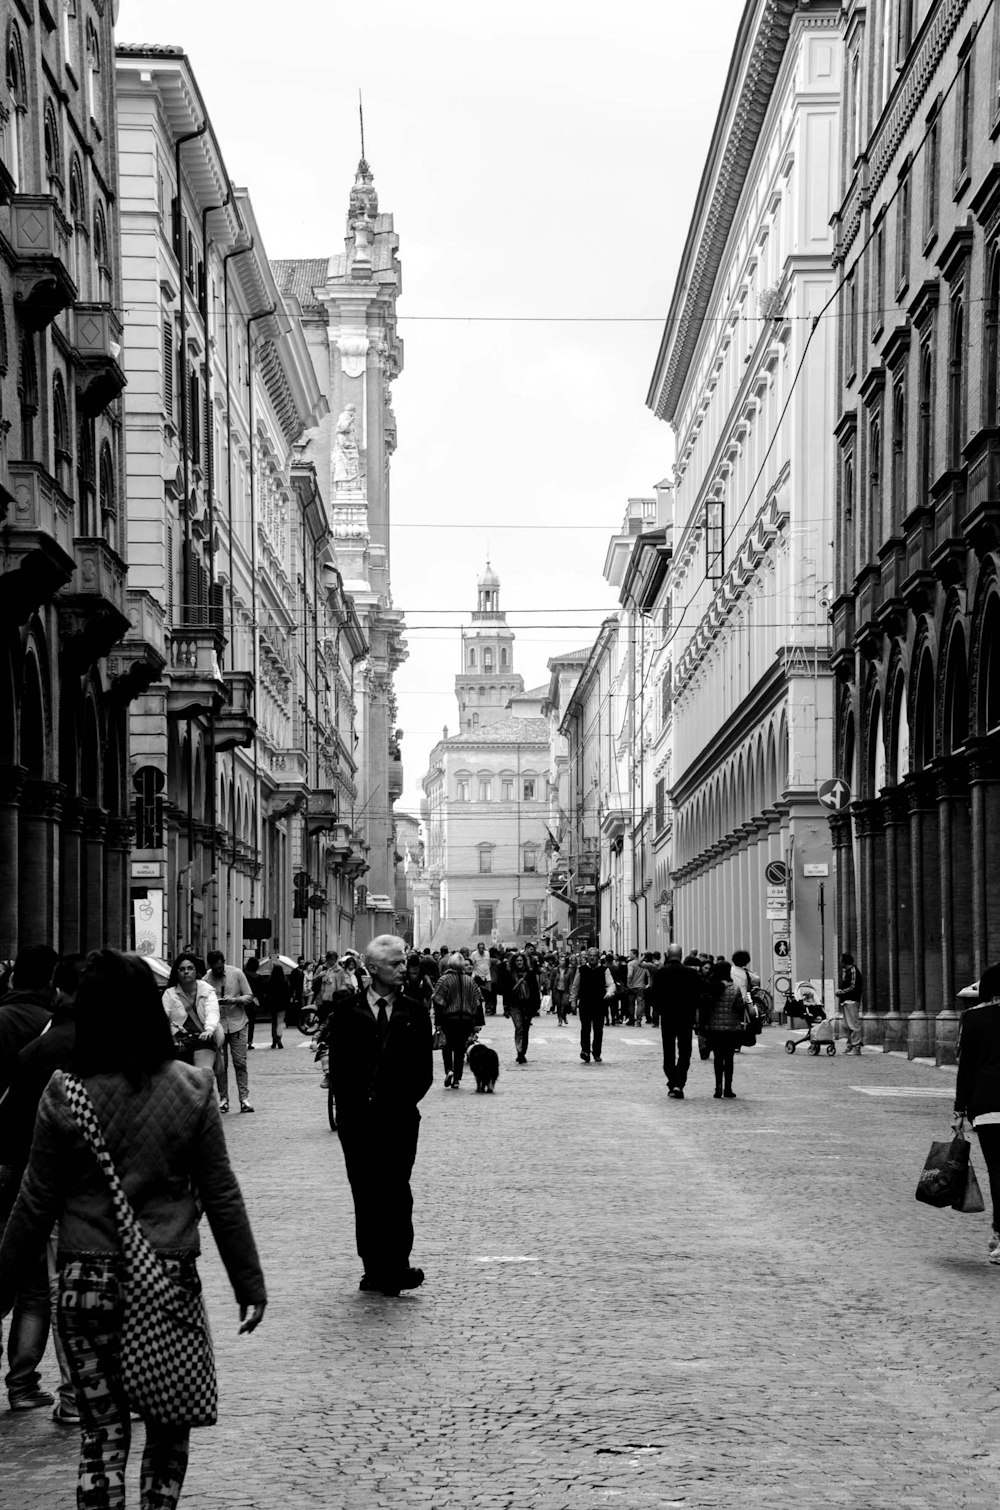 Un groupe de personnes marchant dans une rue à côté de grands immeubles